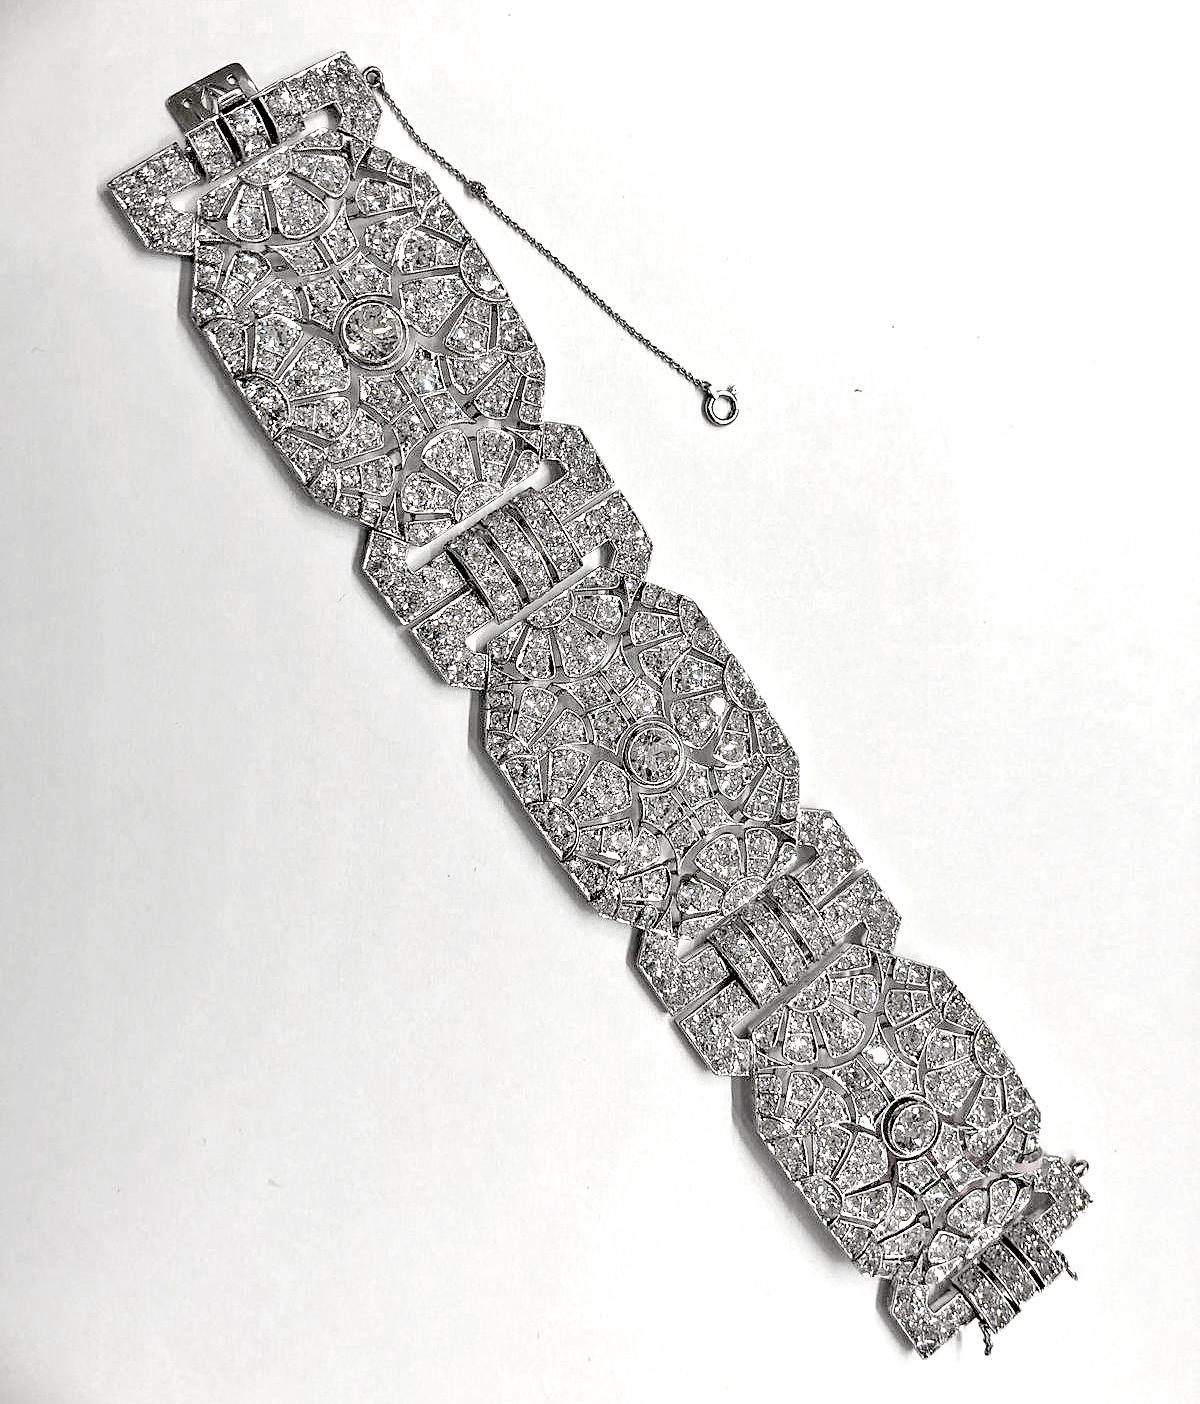 Ein Vintage-Armband im Art-déco-Stil aus den 1960er-Jahren, bestehend aus vier miteinander verbundenen Plättchen mit 45 Karat Brillanten aus Platin, die sich mit ähnlich geformten geometrischen Gliedern abwechseln. Das Armband misst ungefähr 7,5